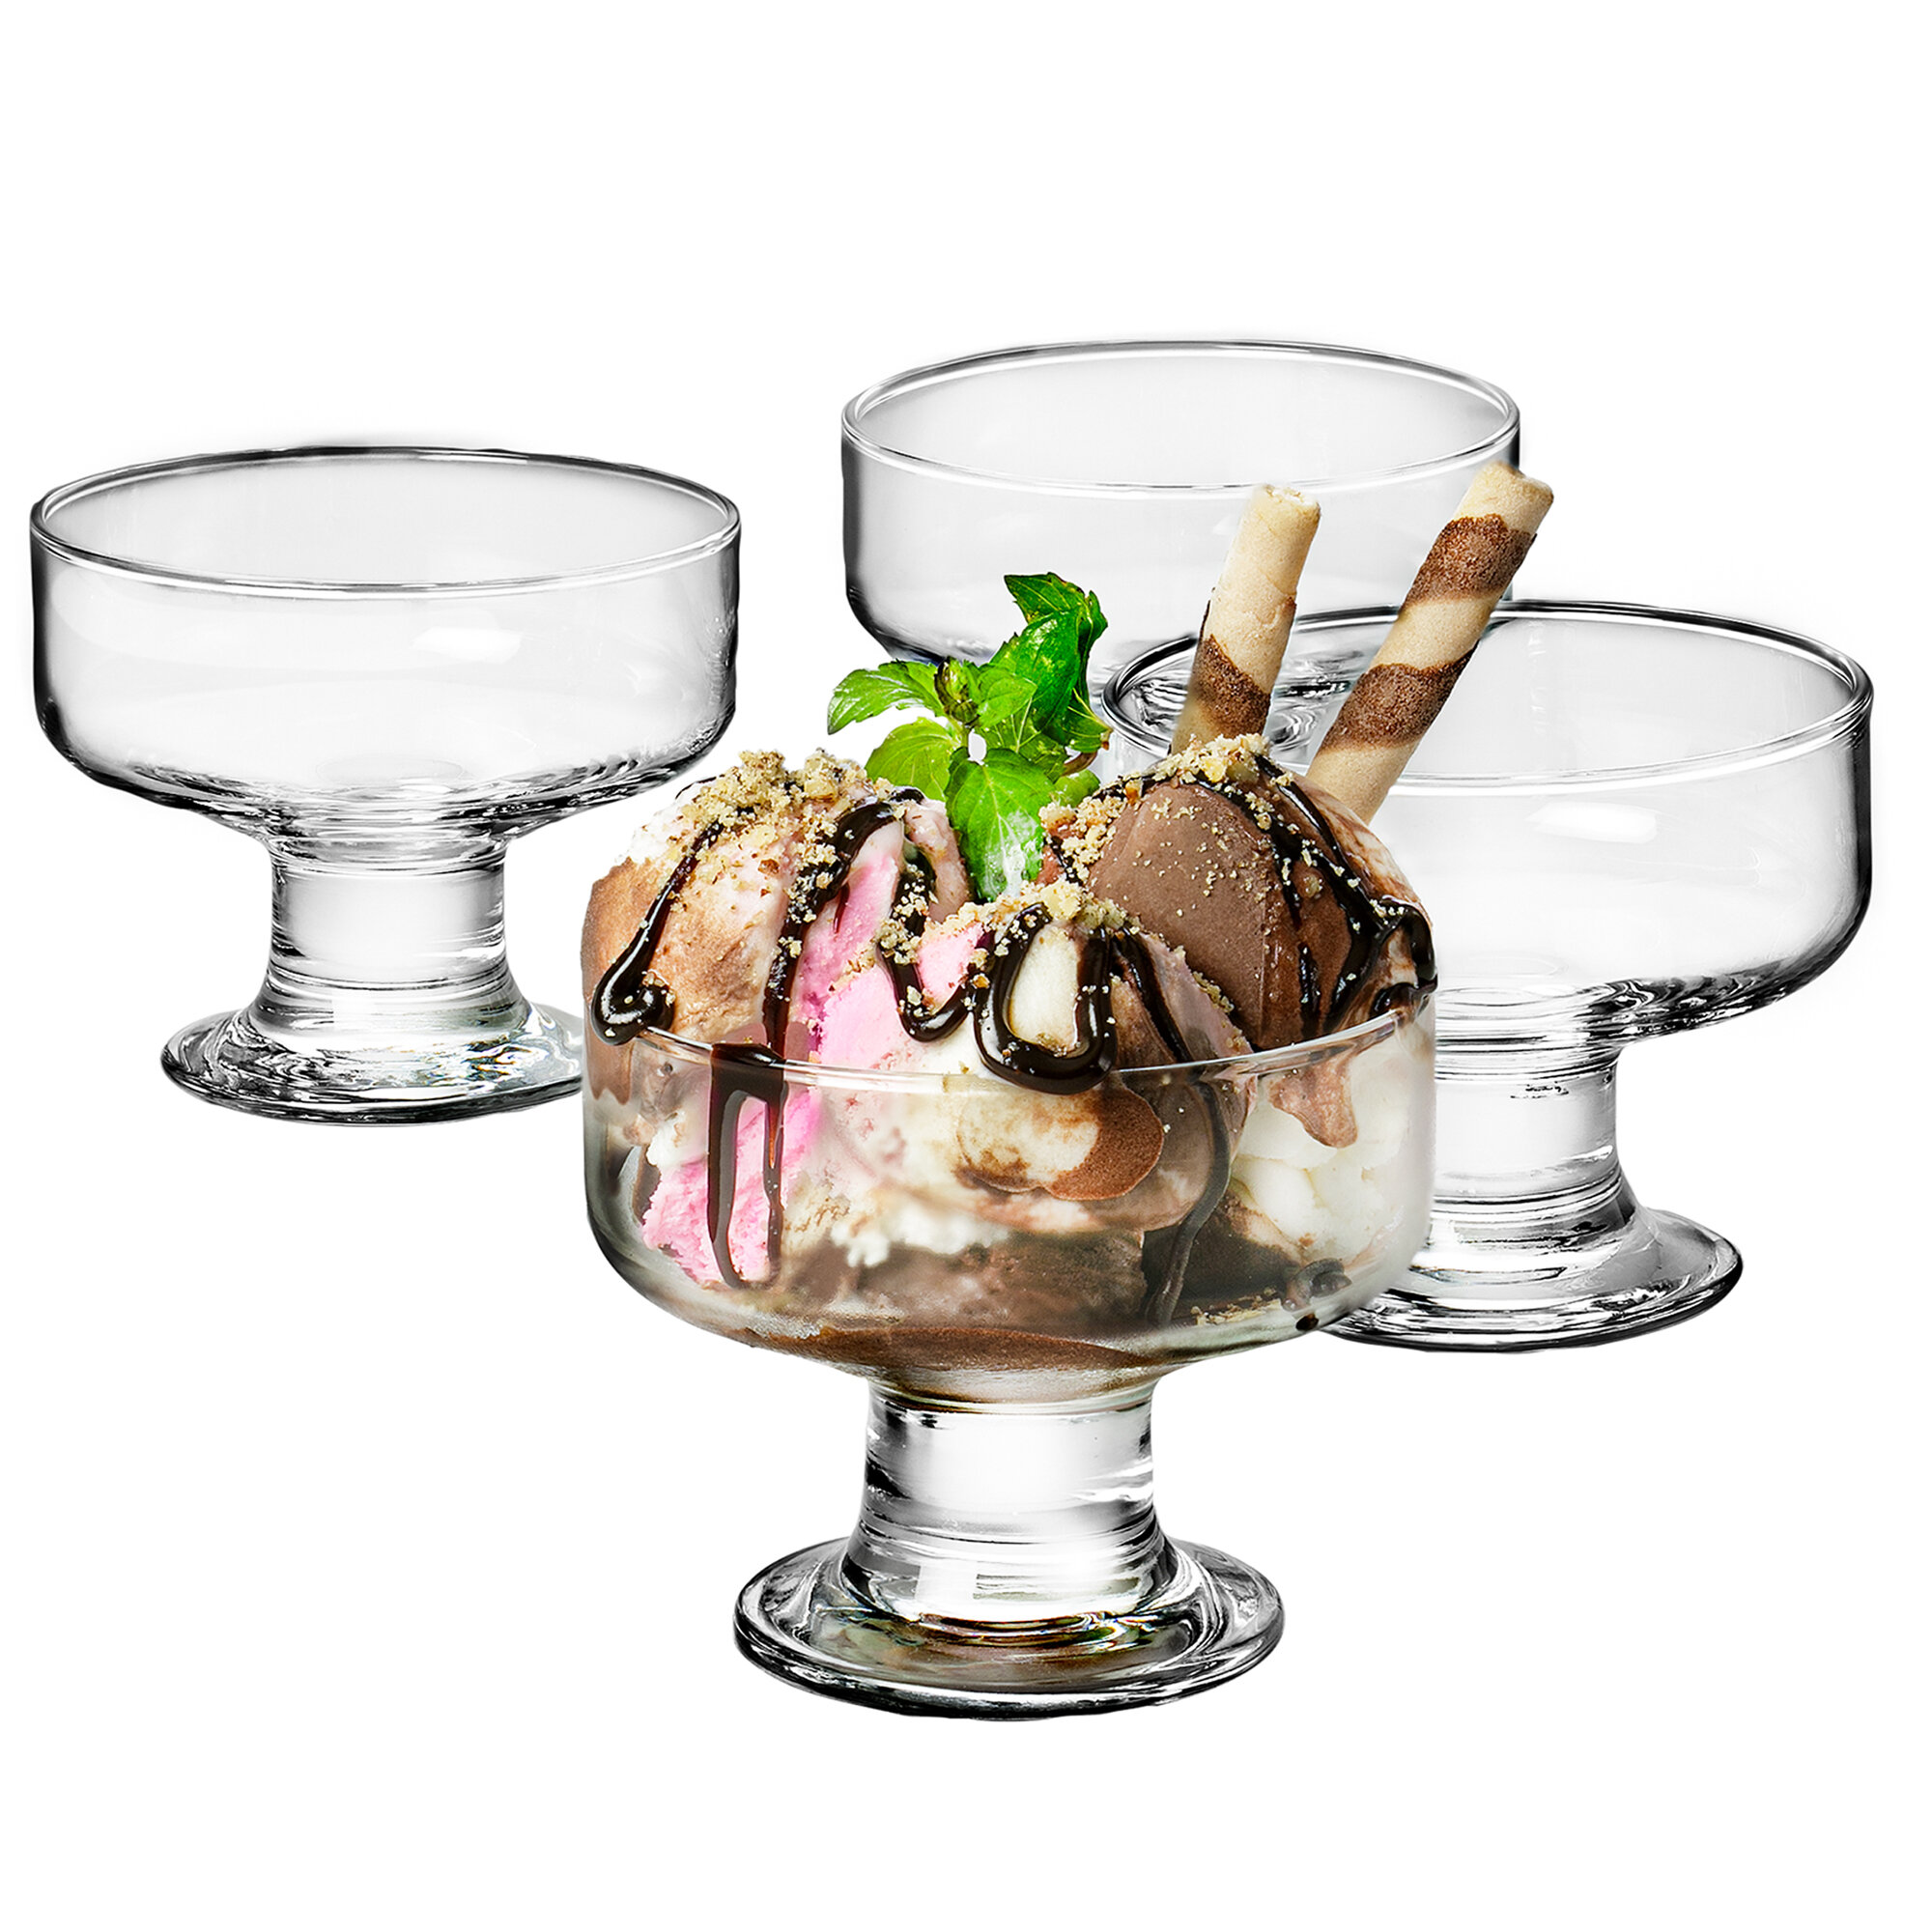 https://assets.wfcdn.com/im/19618983/compr-r85/1928/192852068/9-oz-dessert-bowl.jpg